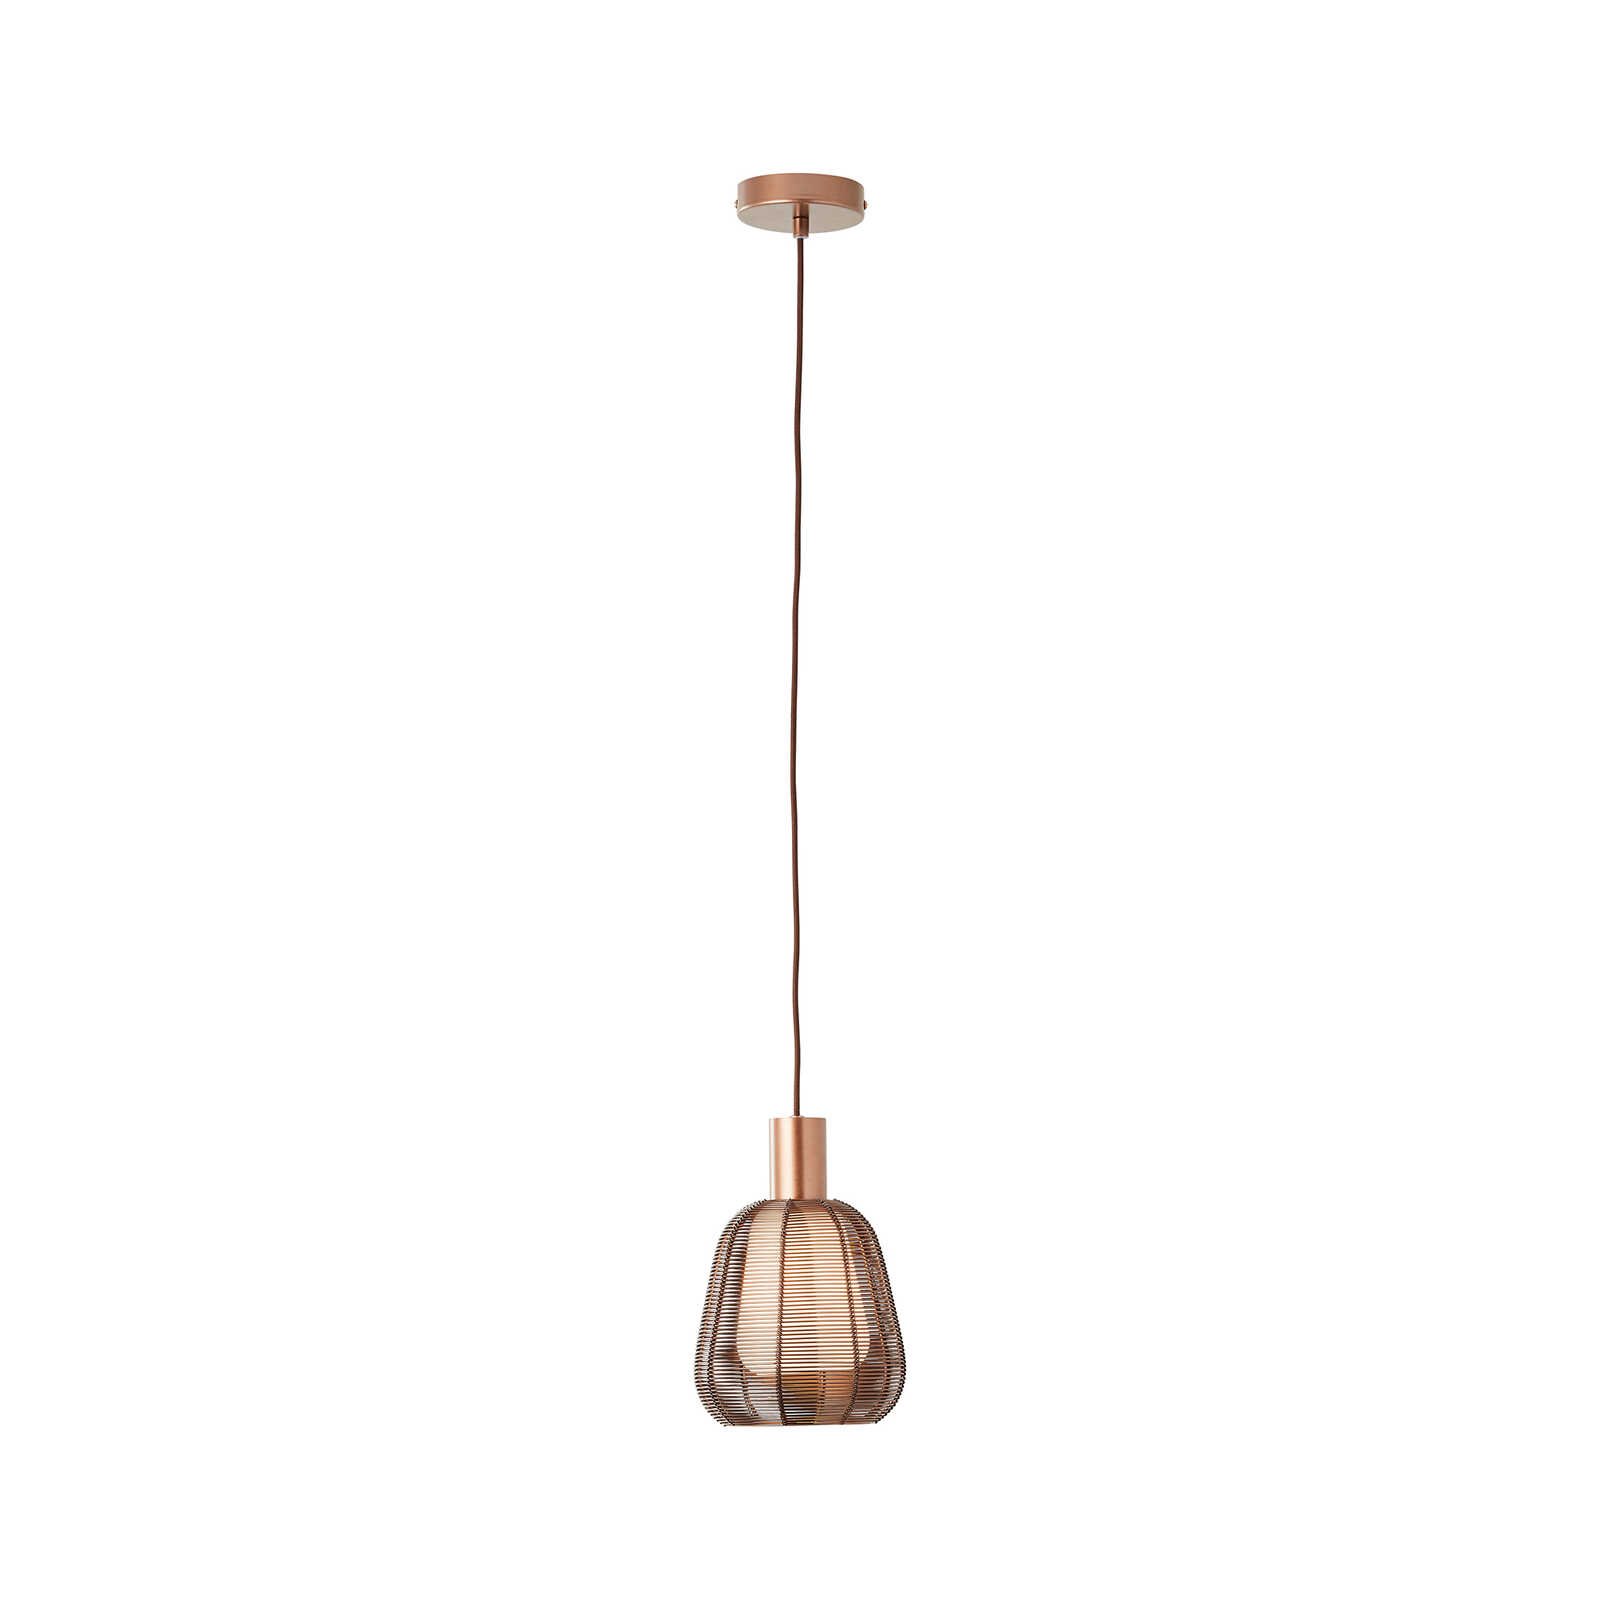 Metalen hanglamp - Thore 1 - Bruin
